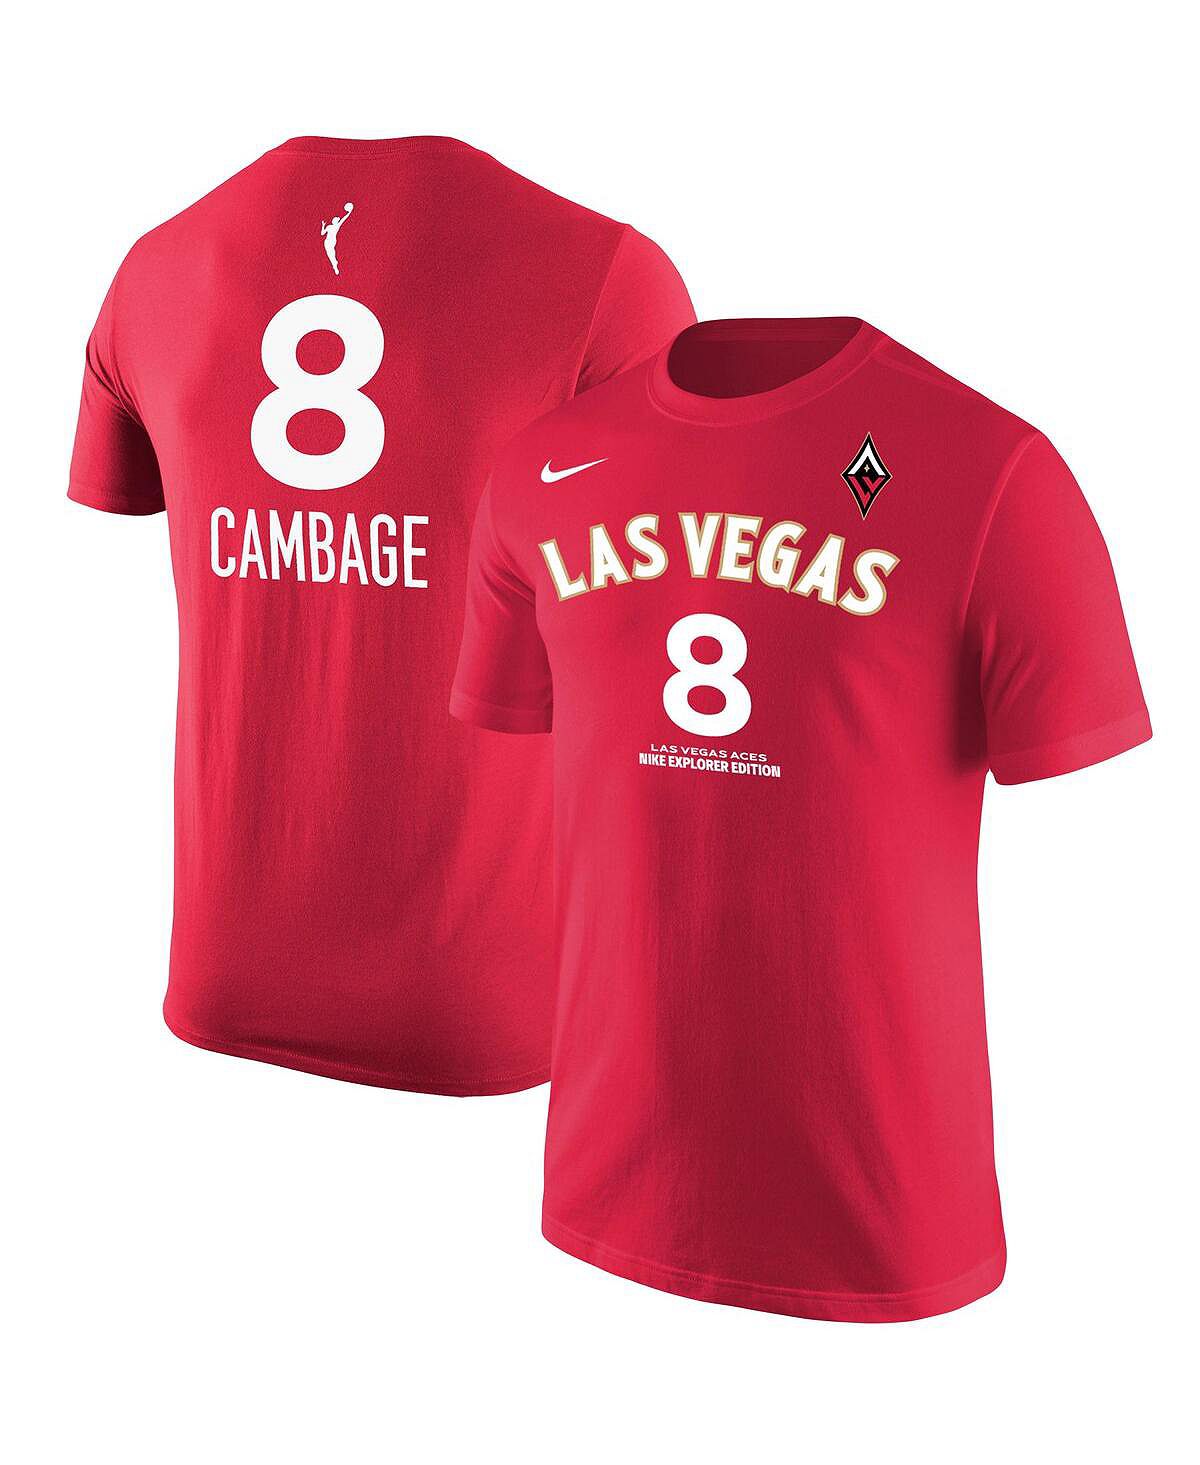 цена Мужская красная футболка Liz Cambage Las Vegas Aces Explorer Edition с именем и номером Nike